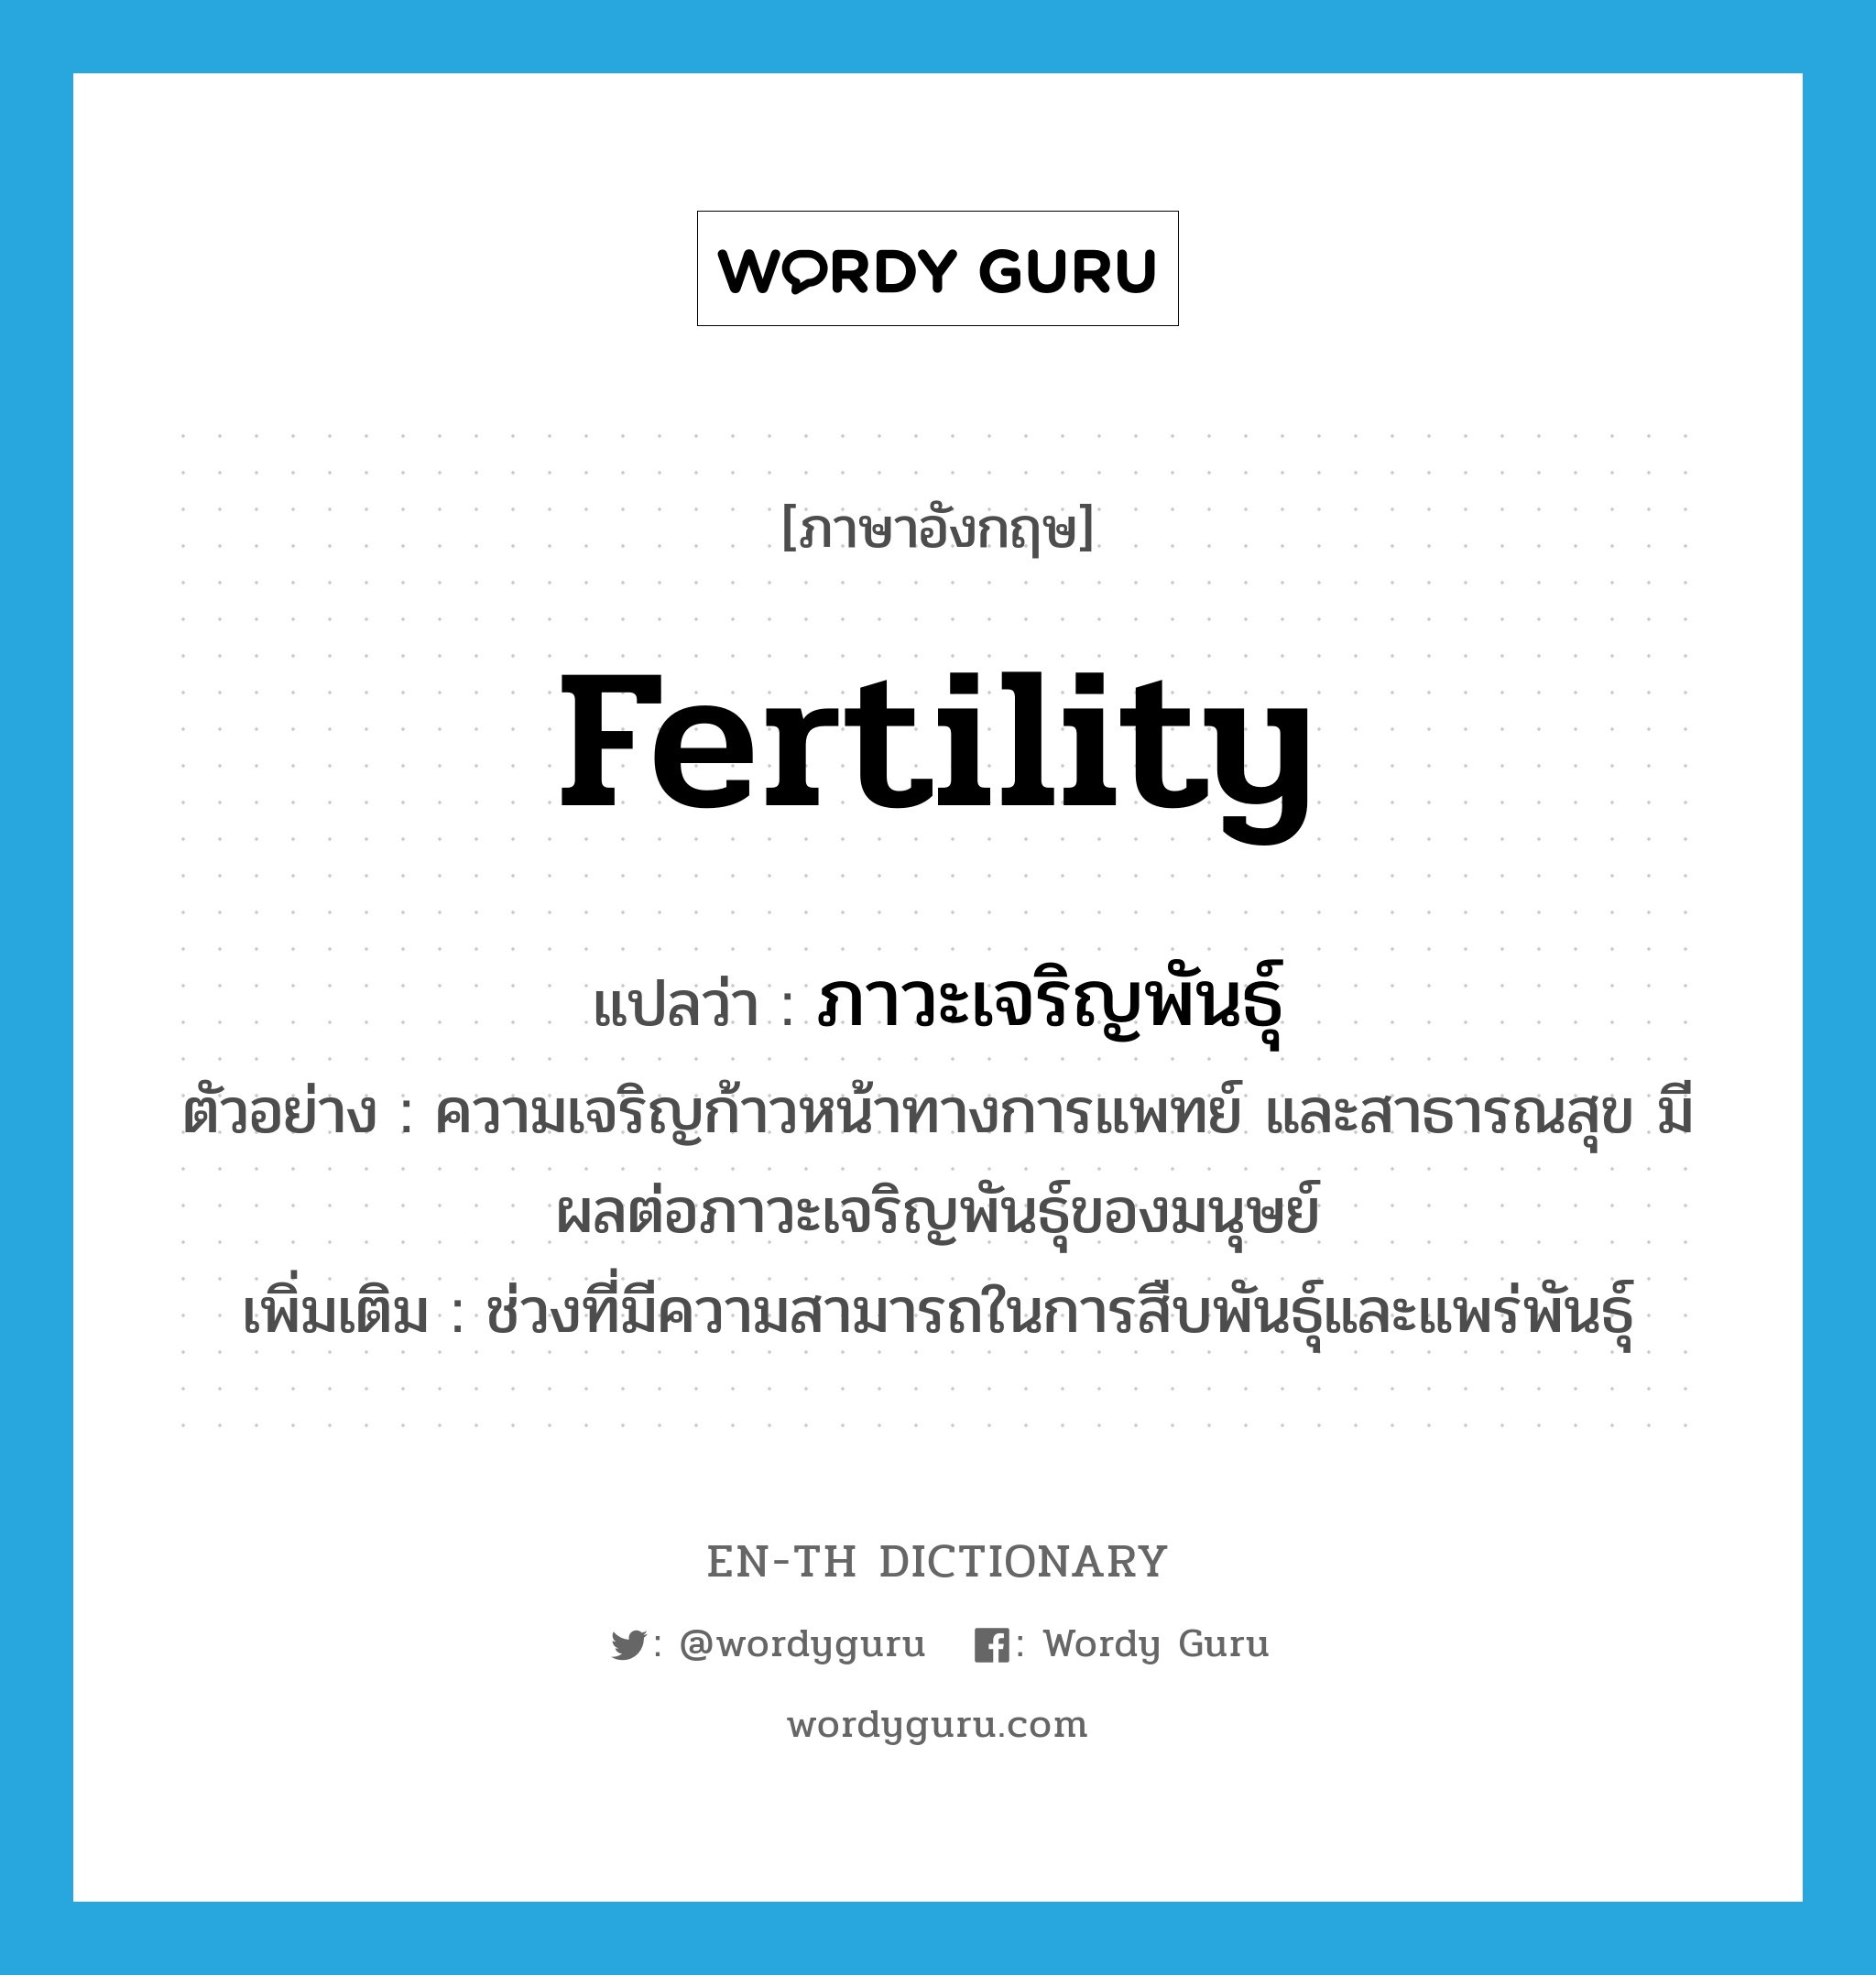 fertility แปลว่า?, คำศัพท์ภาษาอังกฤษ fertility แปลว่า ภาวะเจริญพันธุ์ ประเภท N ตัวอย่าง ความเจริญก้าวหน้าทางการแพทย์ และสาธารณสุข มีผลต่อภาวะเจริญพันธุ์ของมนุษย์ เพิ่มเติม ช่วงที่มีความสามารถในการสืบพันธุ์และแพร่พันธุ์ หมวด N